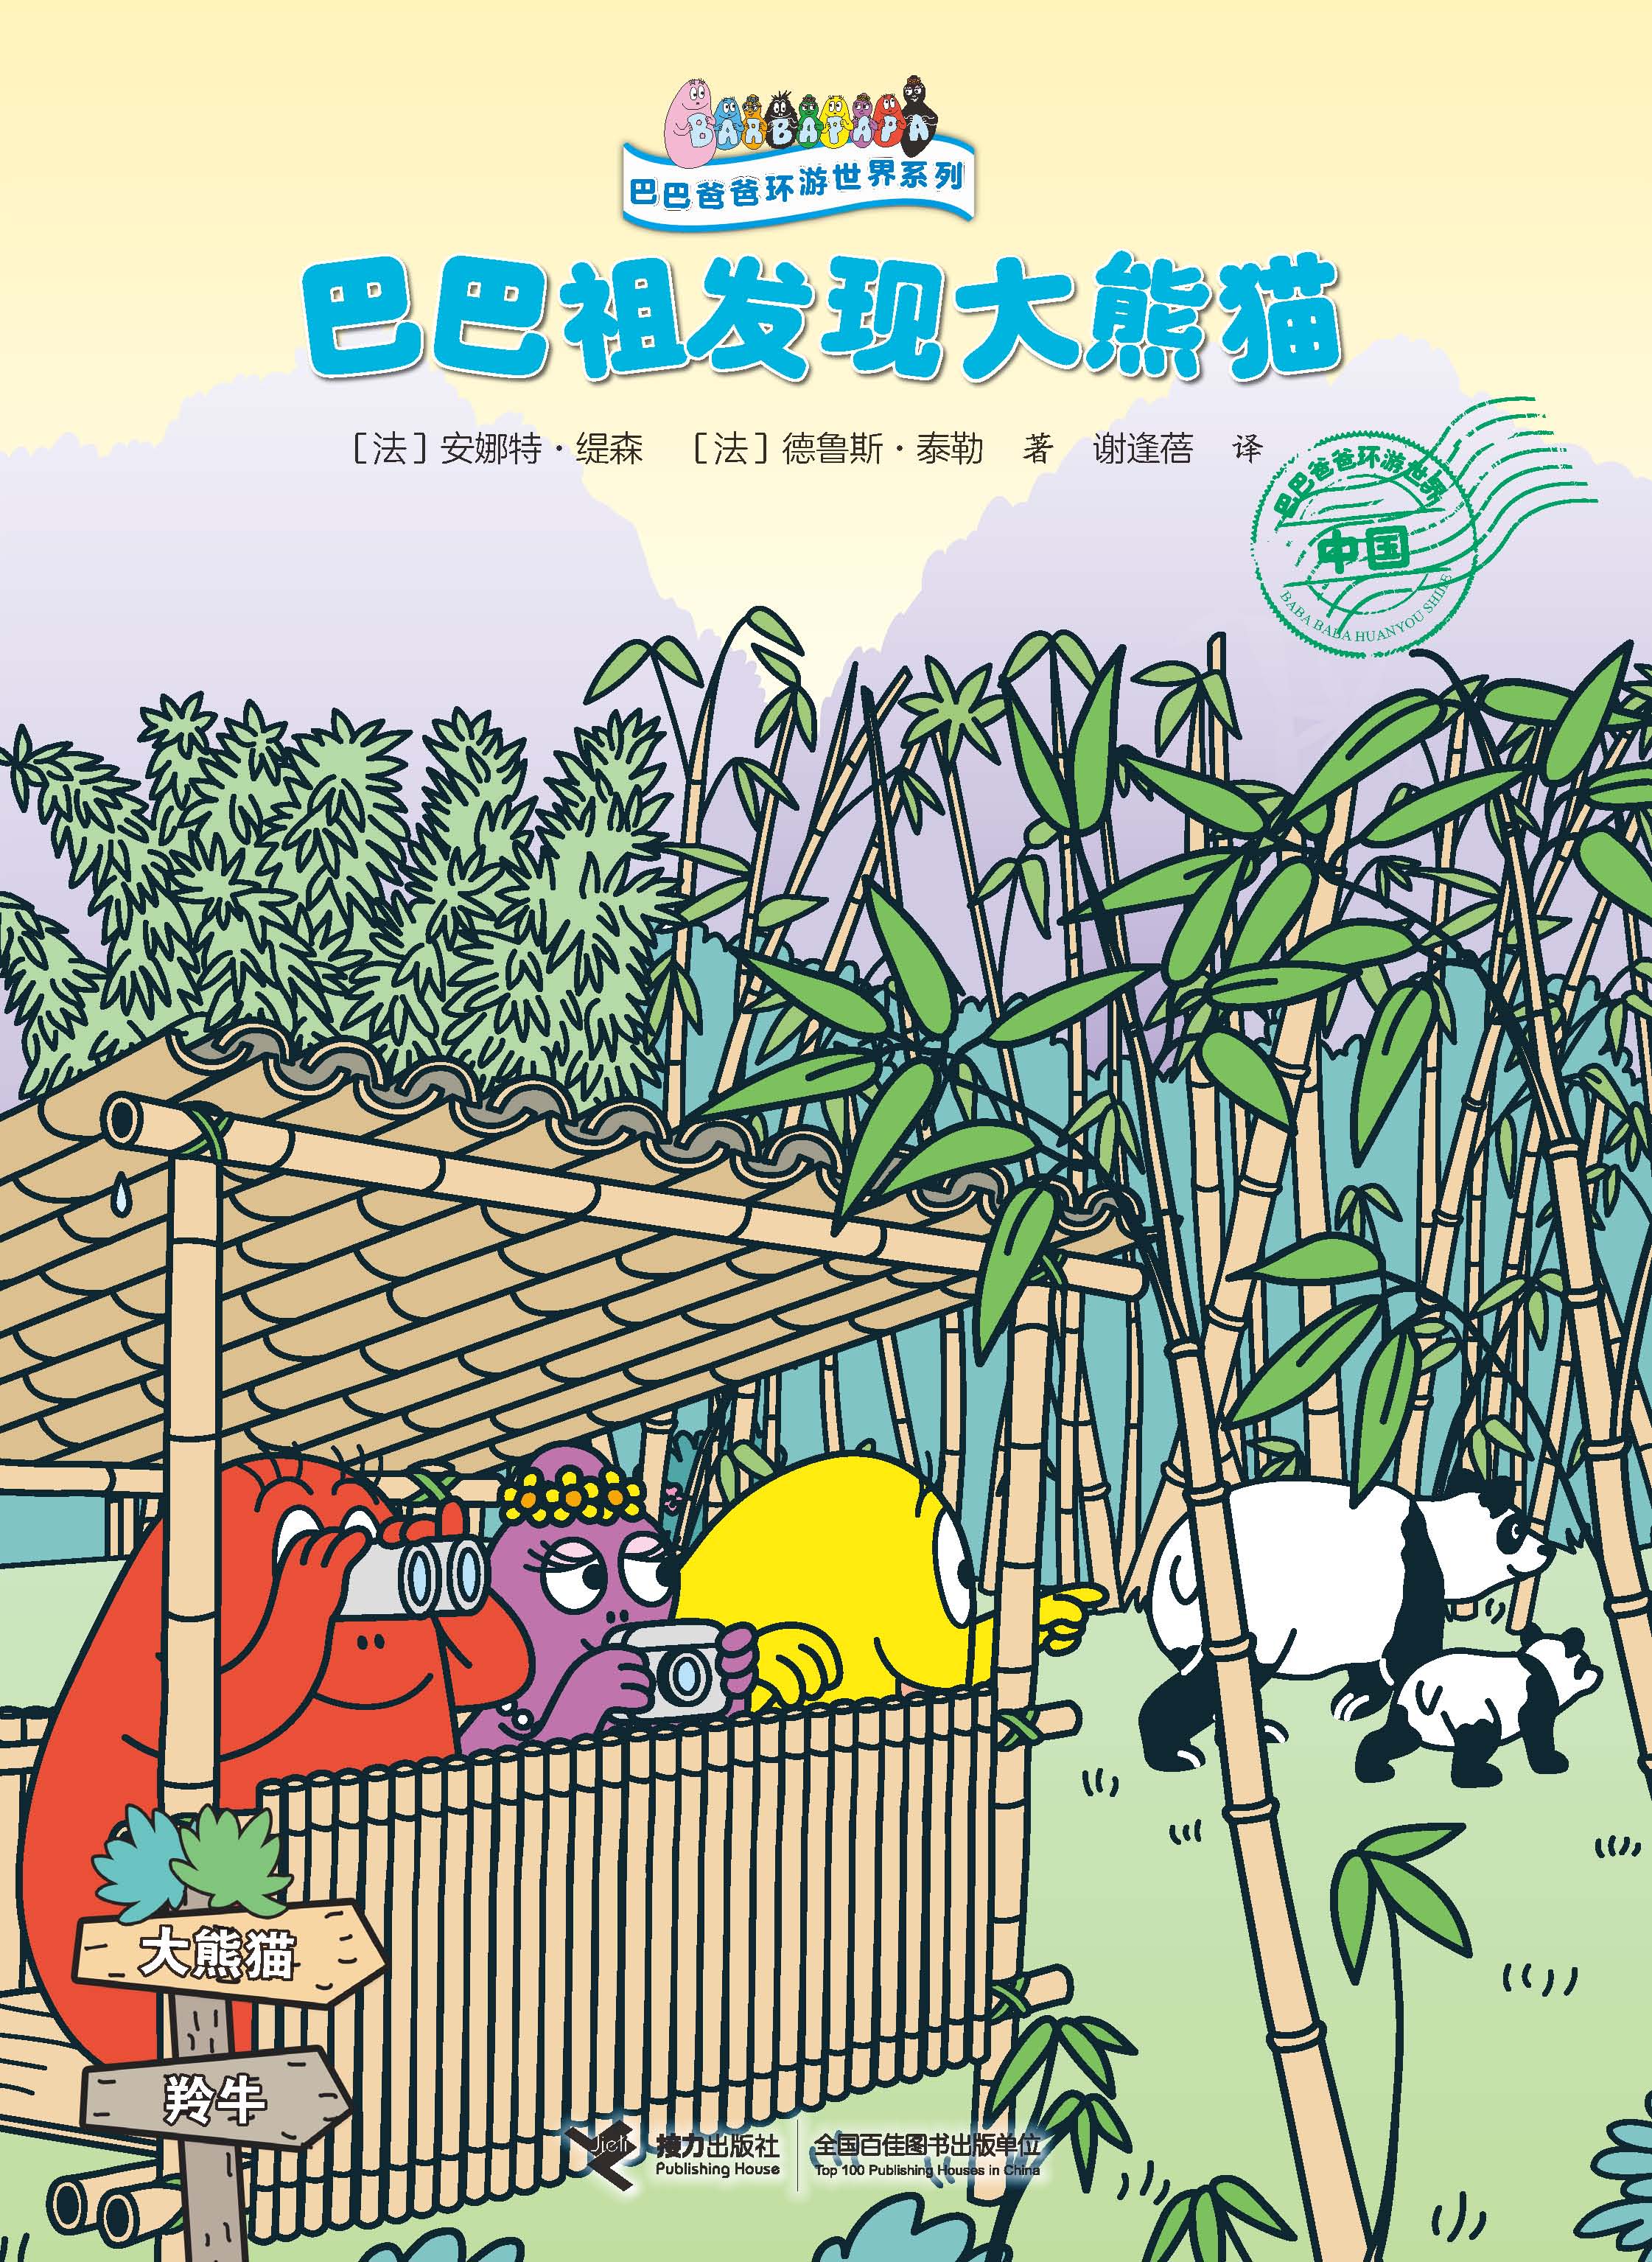 巴巴爸爸环游世界系列:巴巴祖发现大熊猫